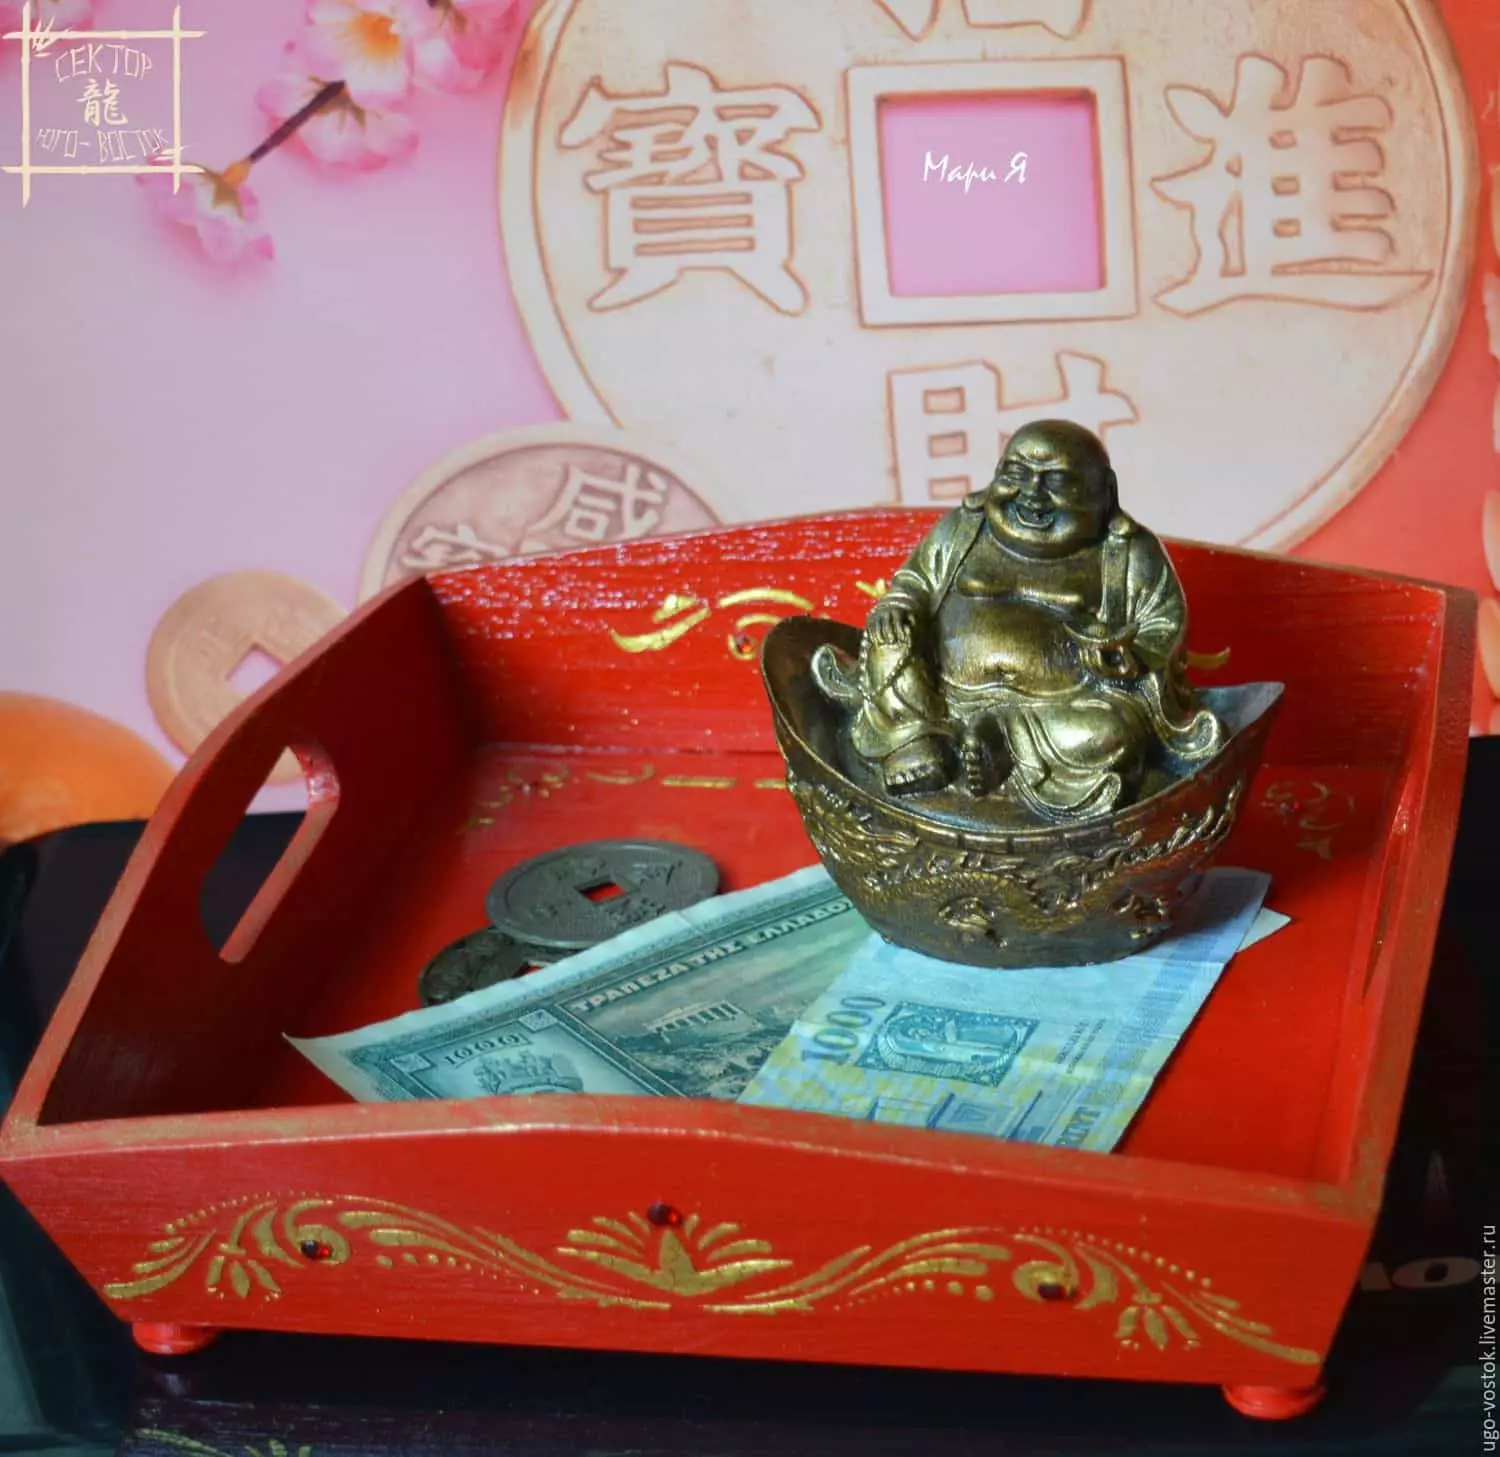 Jak przyciągnąć bogactwo na feng shui